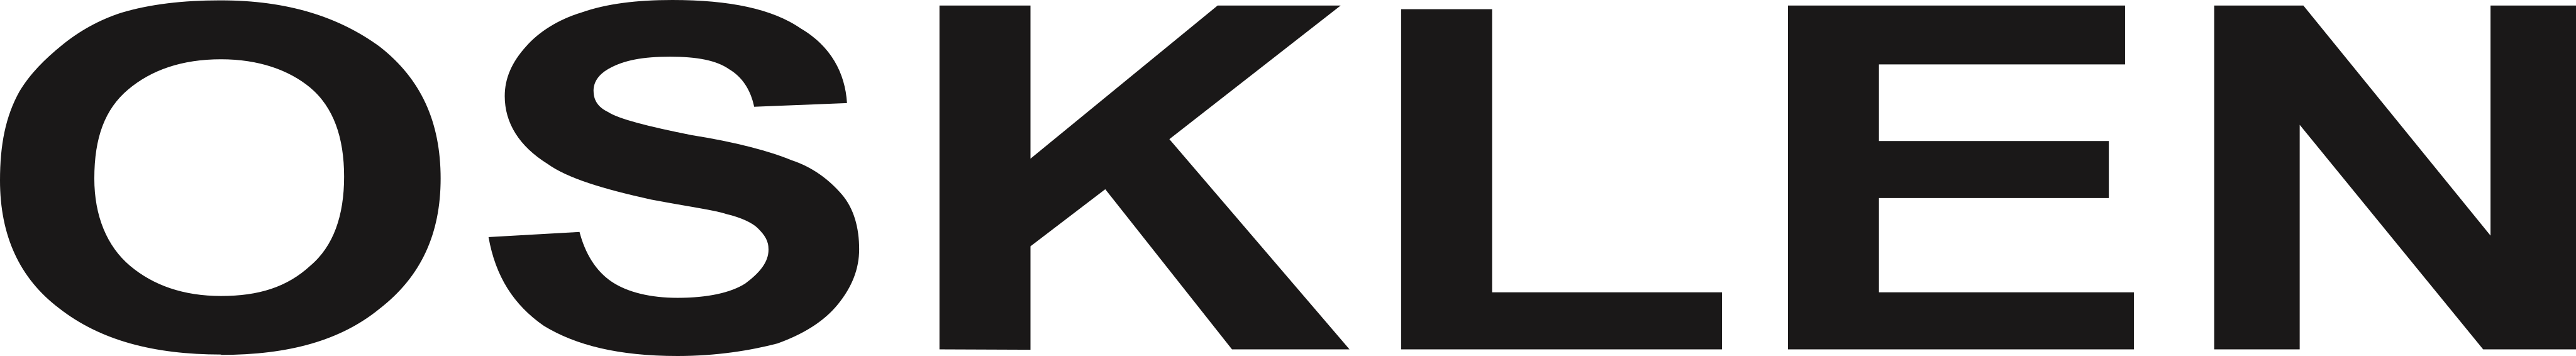 osklen-logo